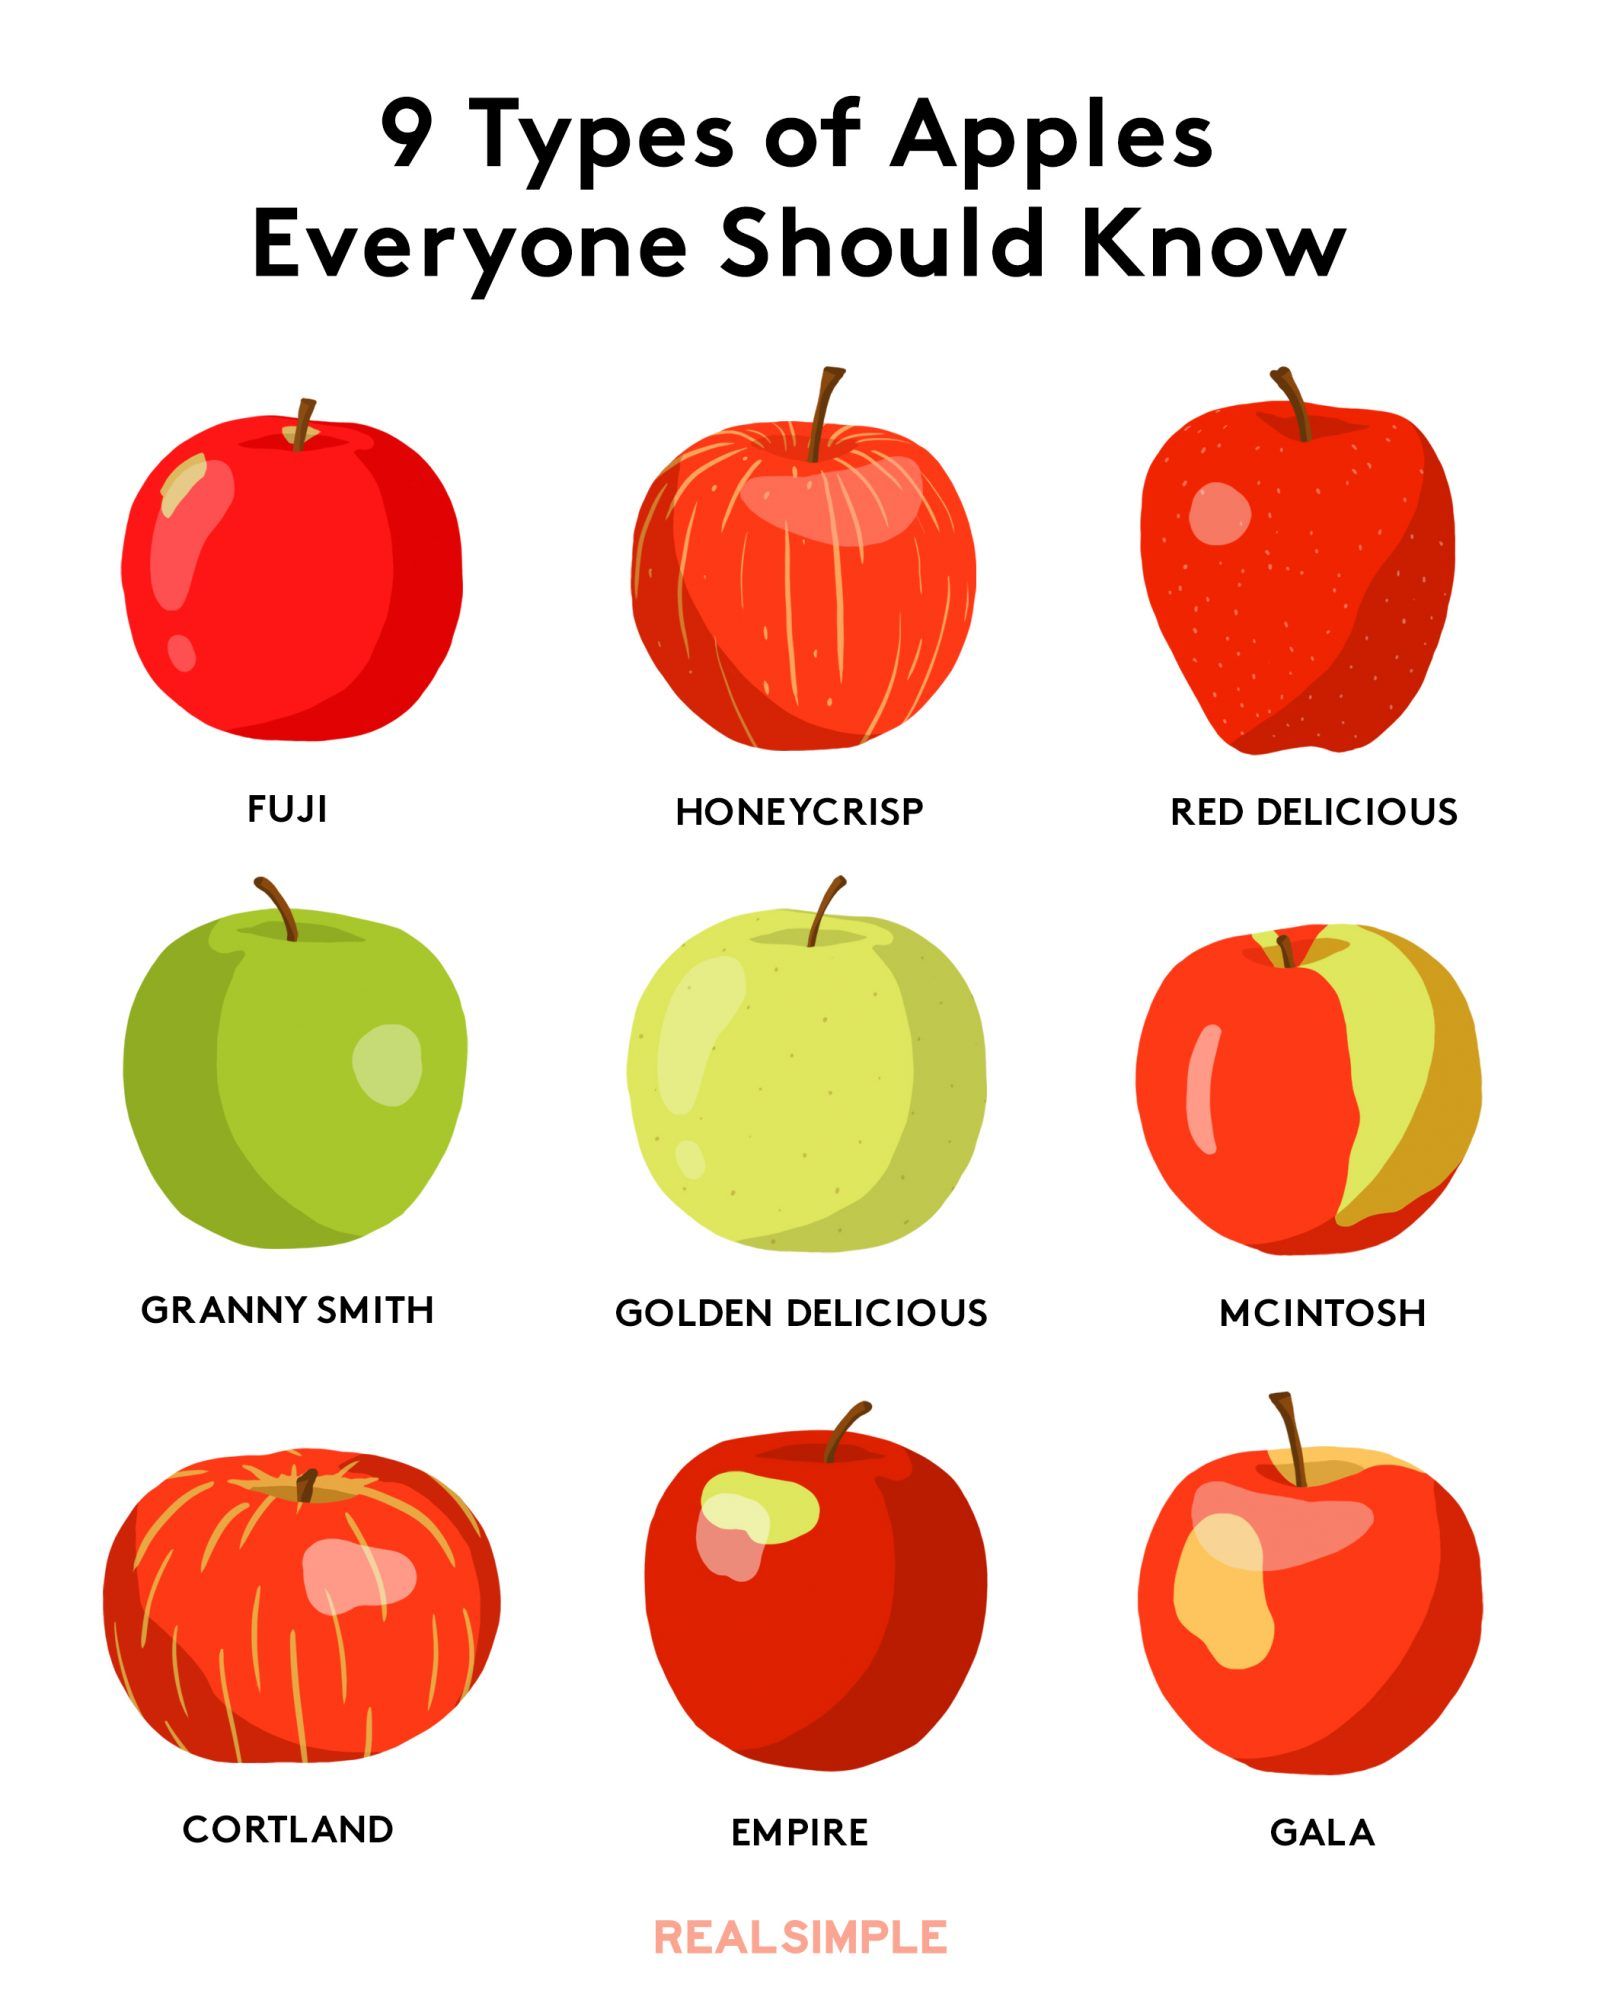 Врсте јабука - различите врсте јабука слике, имена, графикон